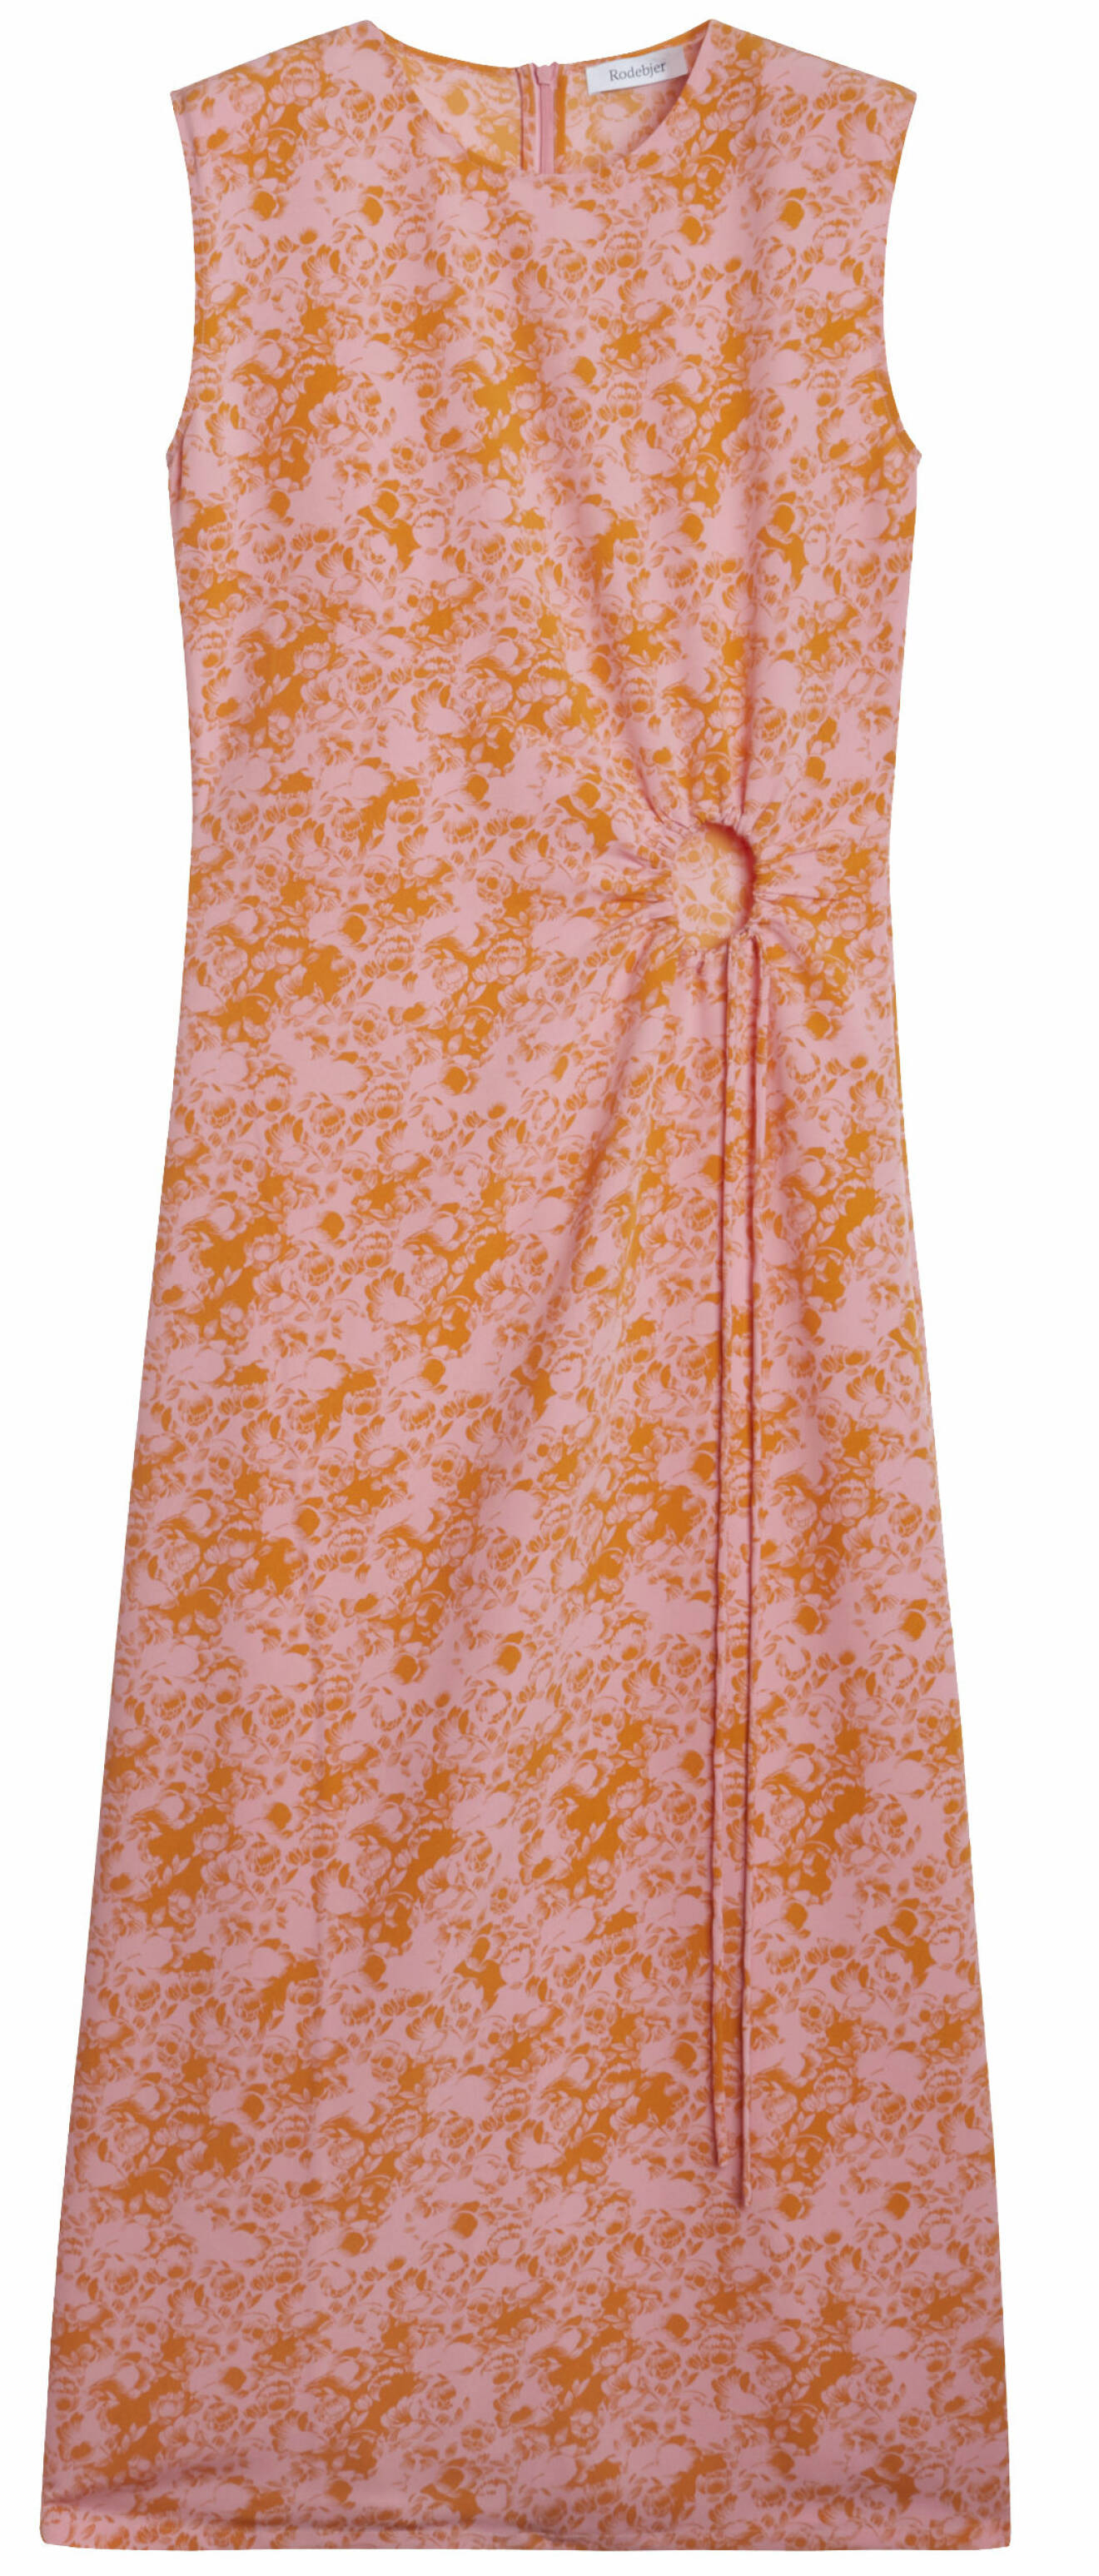 Blommig klänning från Rodebjer i orange och rosa, finns att köpa här.